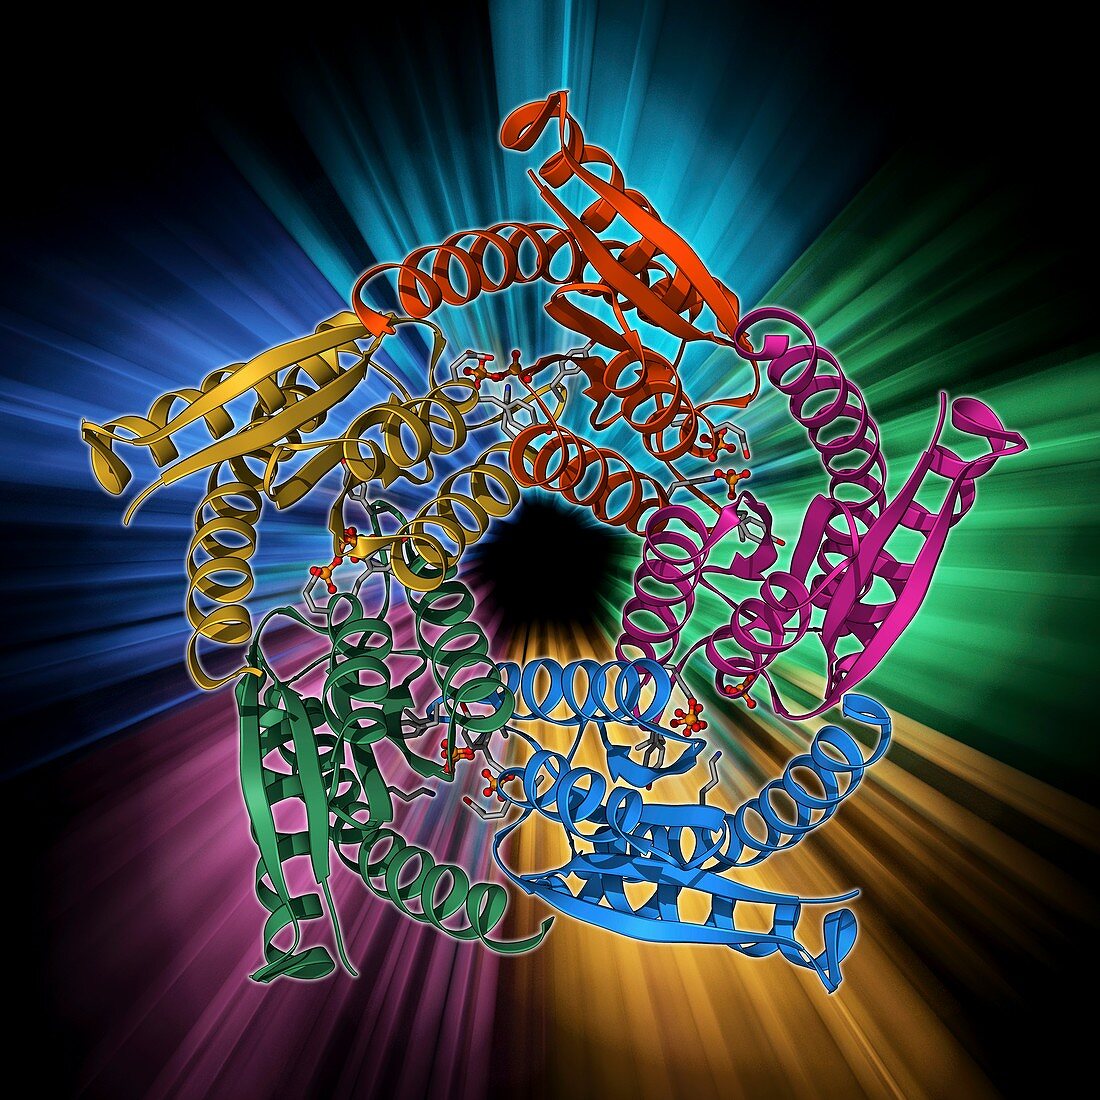 Lumazine synthase molecule